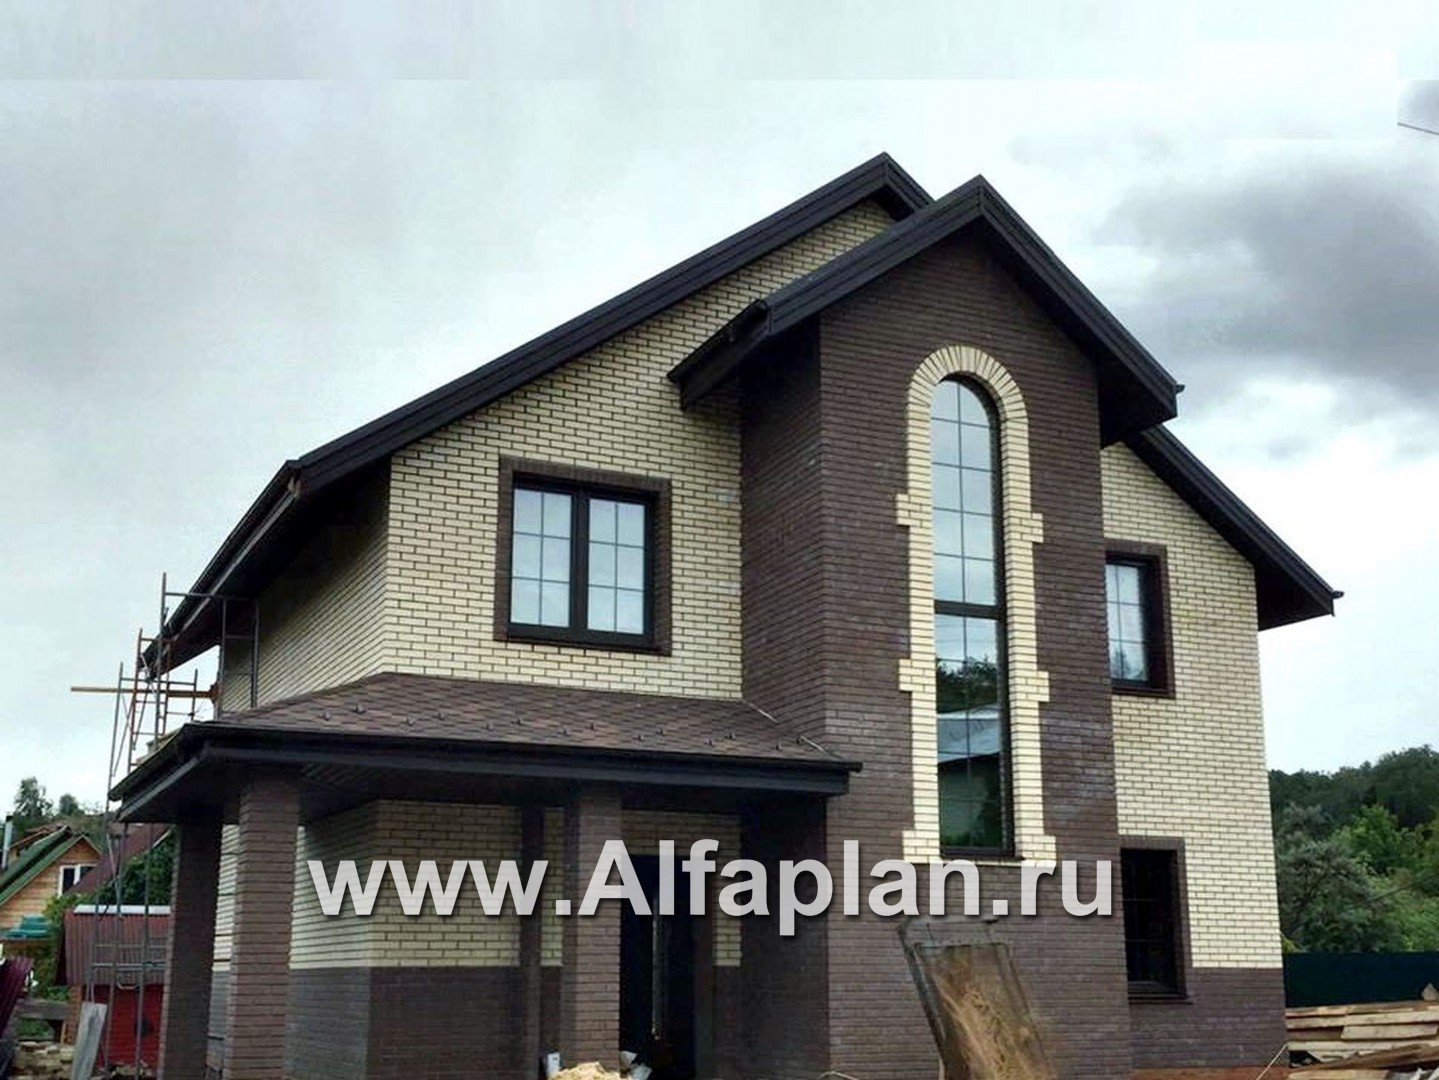 Проекты домов Альфаплан - «Виконт» - компактный дом с отличной планировкой - дополнительное изображение №2